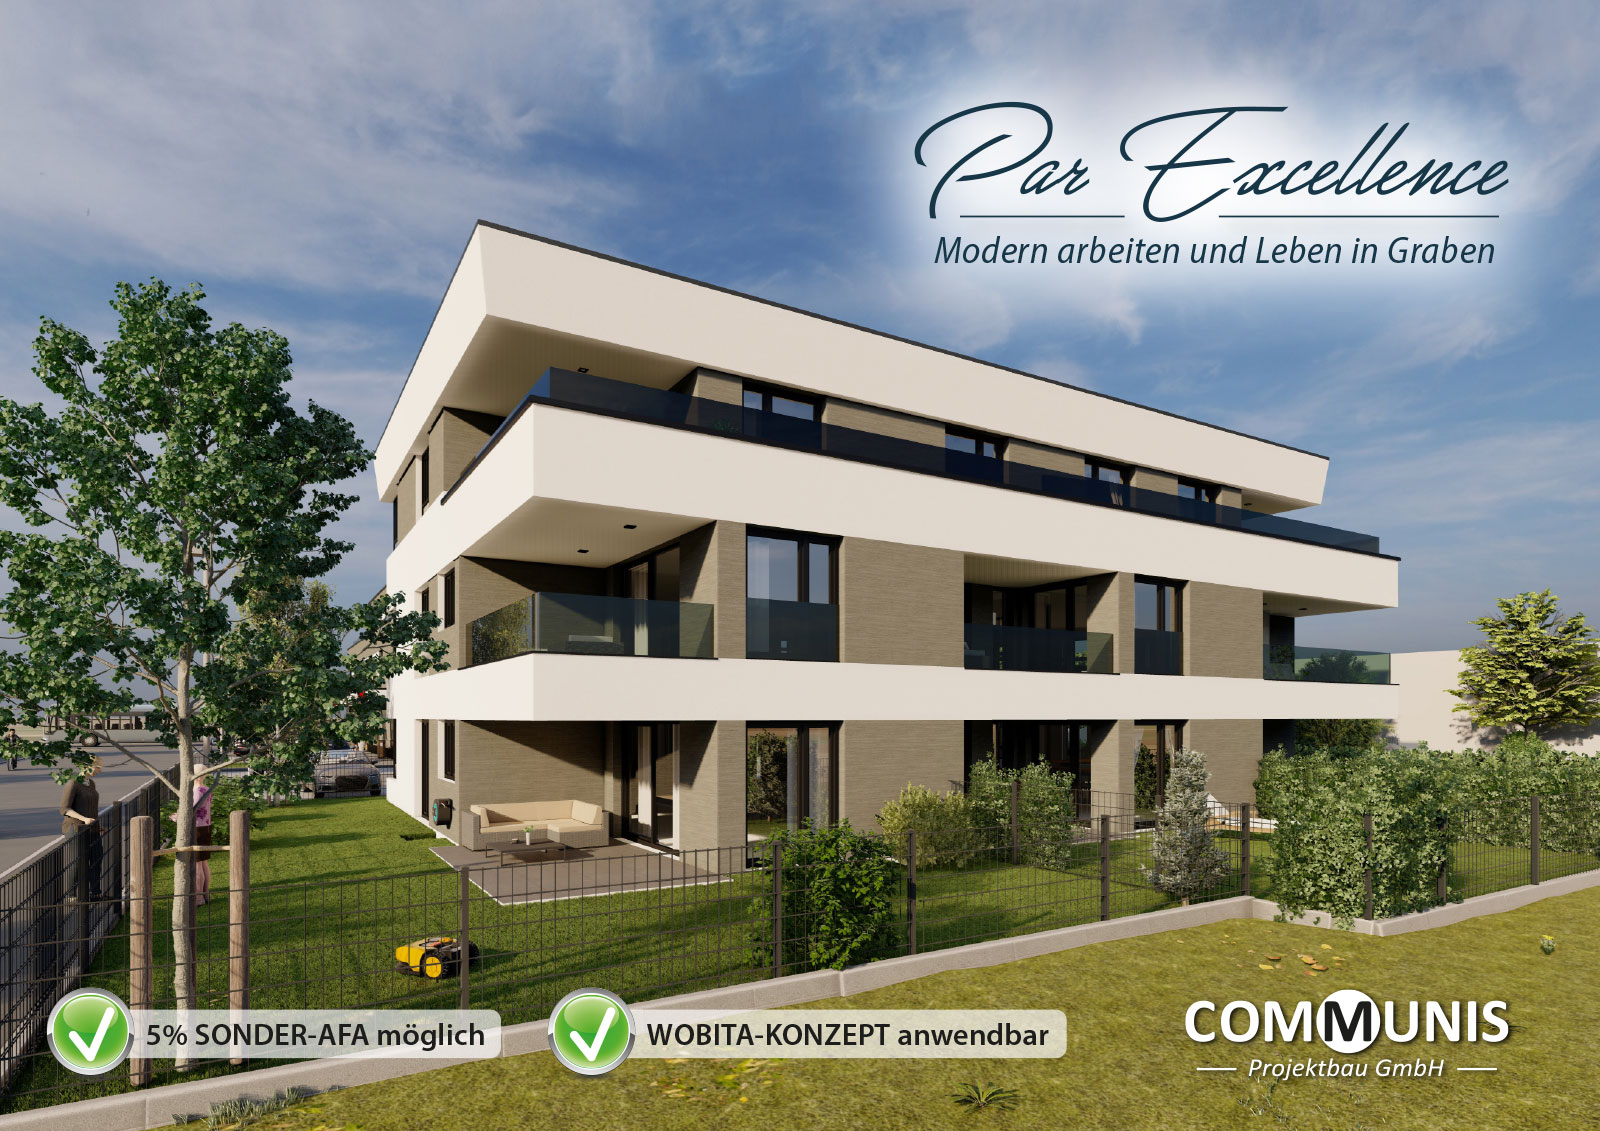 Unter dem ehrgeizigen Motto „Par Excellence“ baut die Communis Projektbau GmbH acht qualitativ hochwertige Eigentumswohnungen und ein stilvolles Geschäftsgebäude, wodurch die Infrastruktur in Graben deutlich aufgewertet wird.